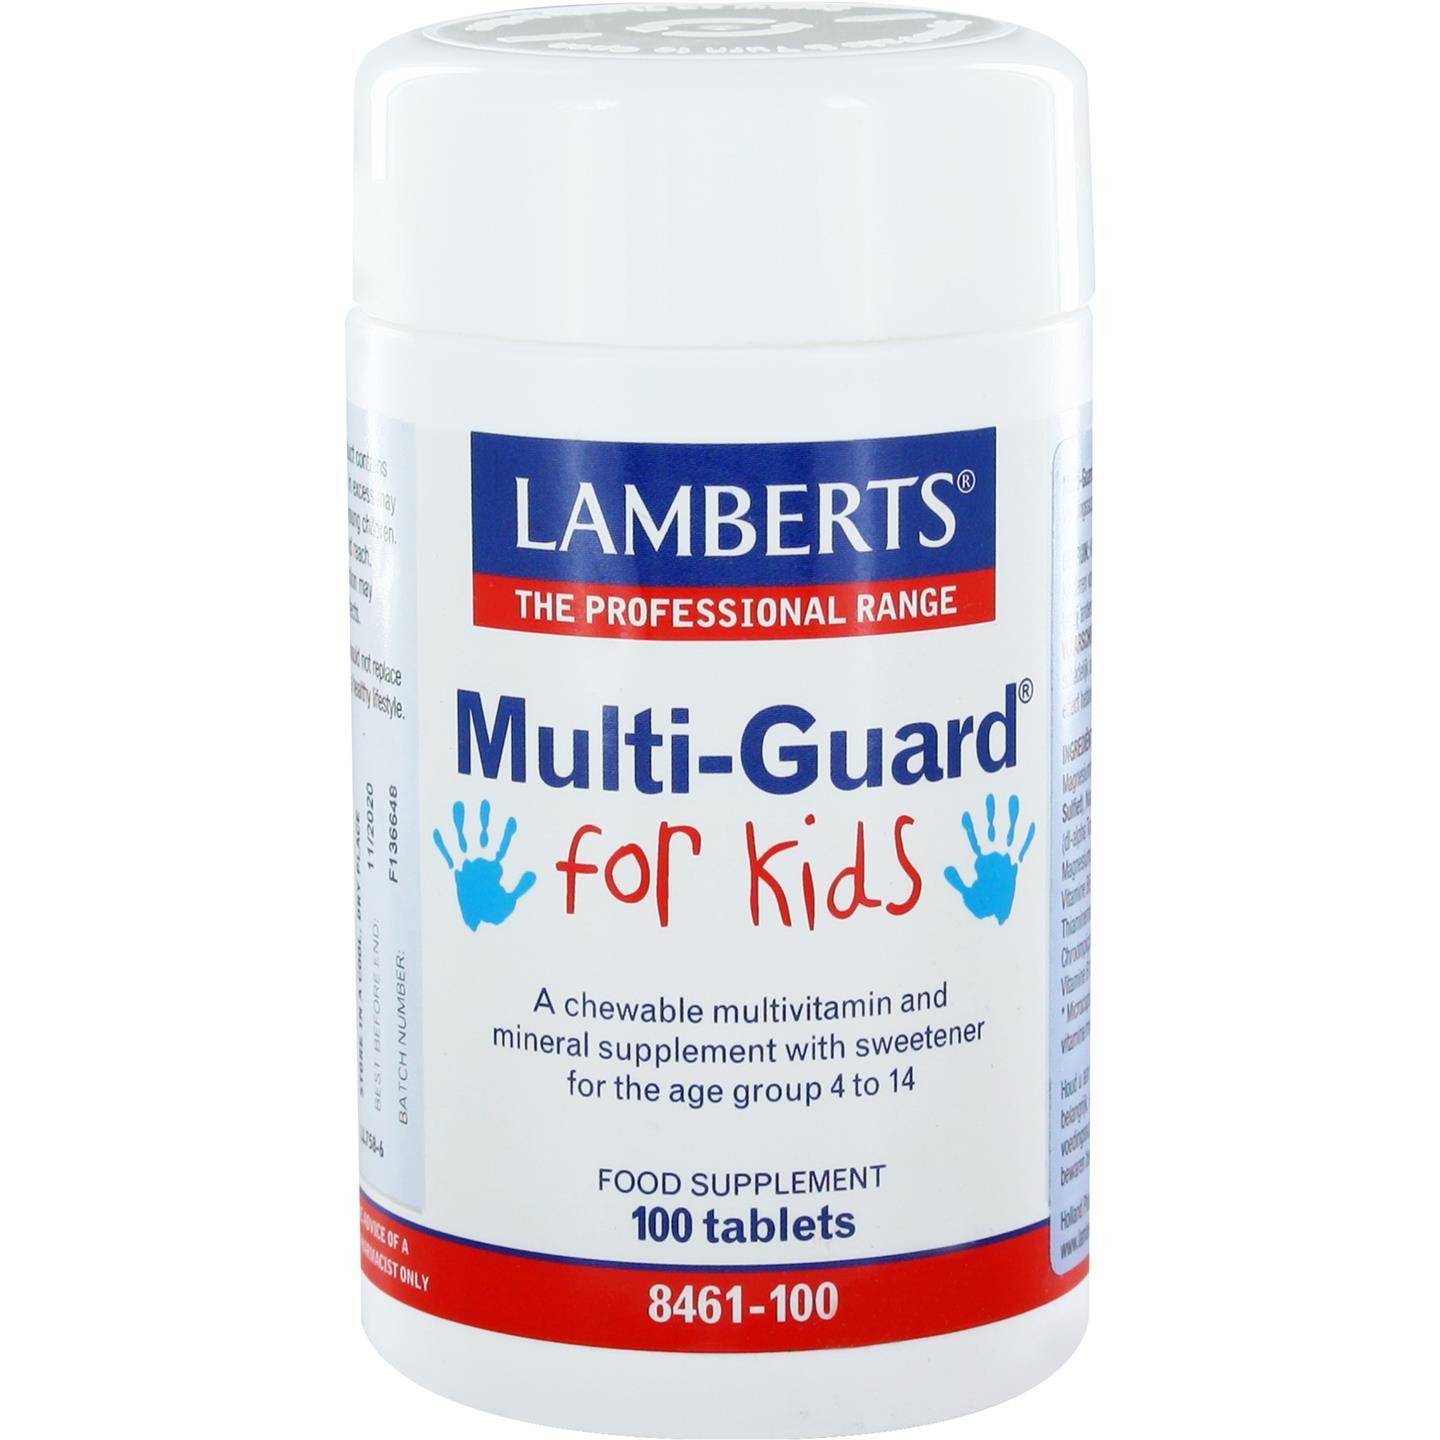 Multi-Guard for Kids